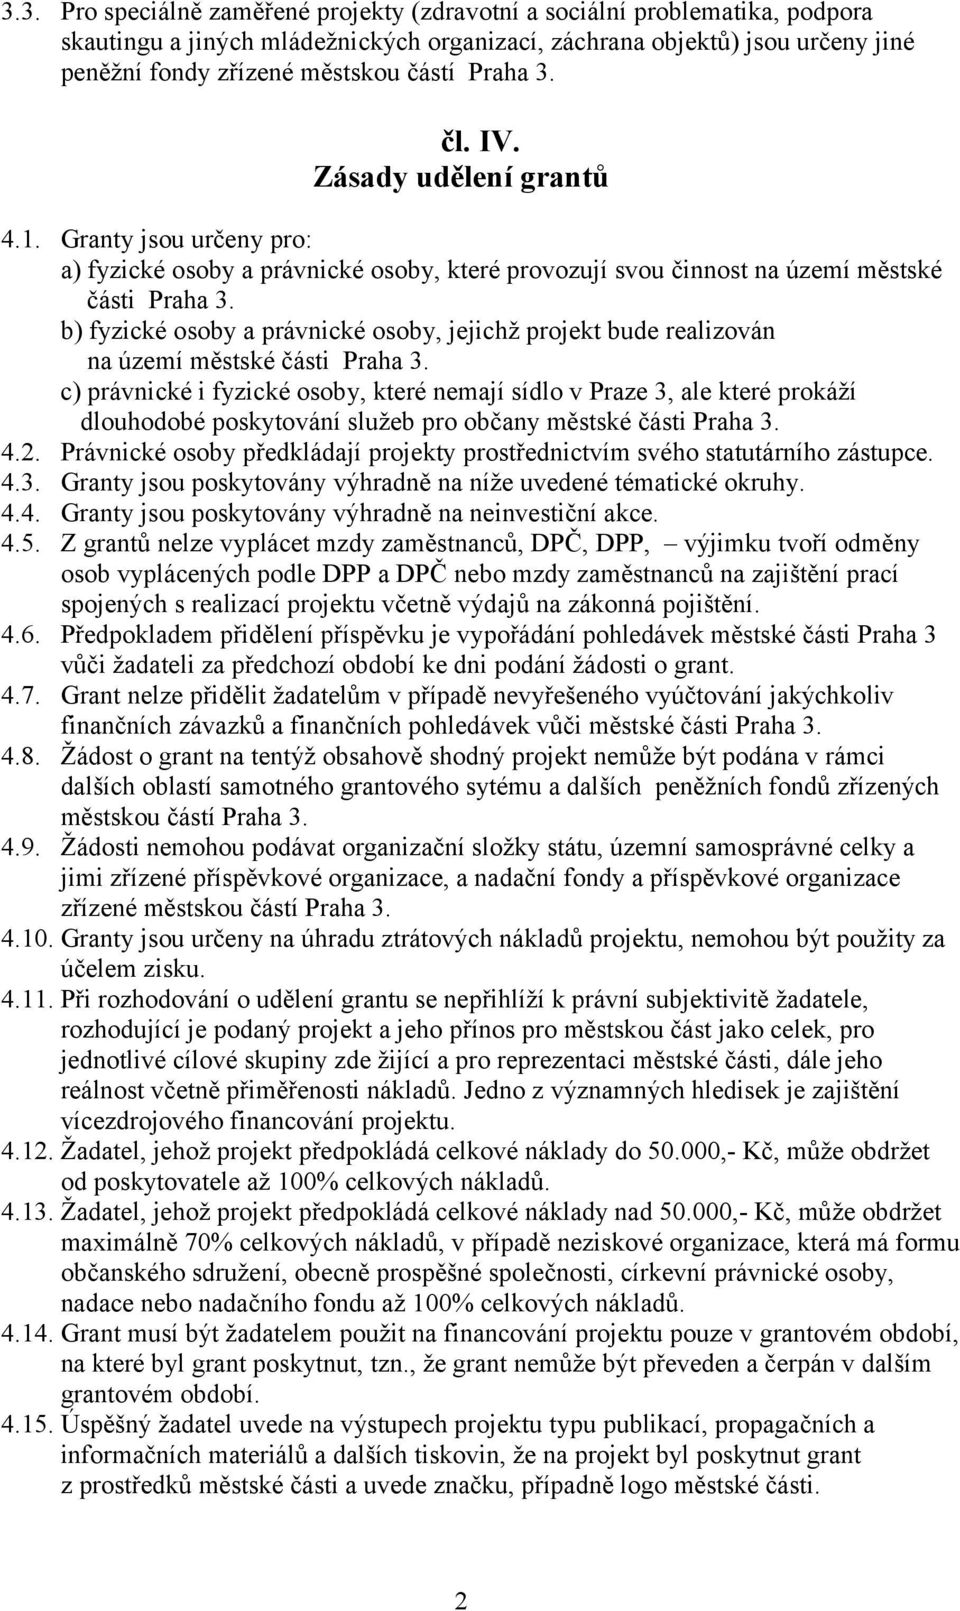 b) fyzické osoby a právnické osoby, jejichž projekt bude realizován na území městské části Praha 3.